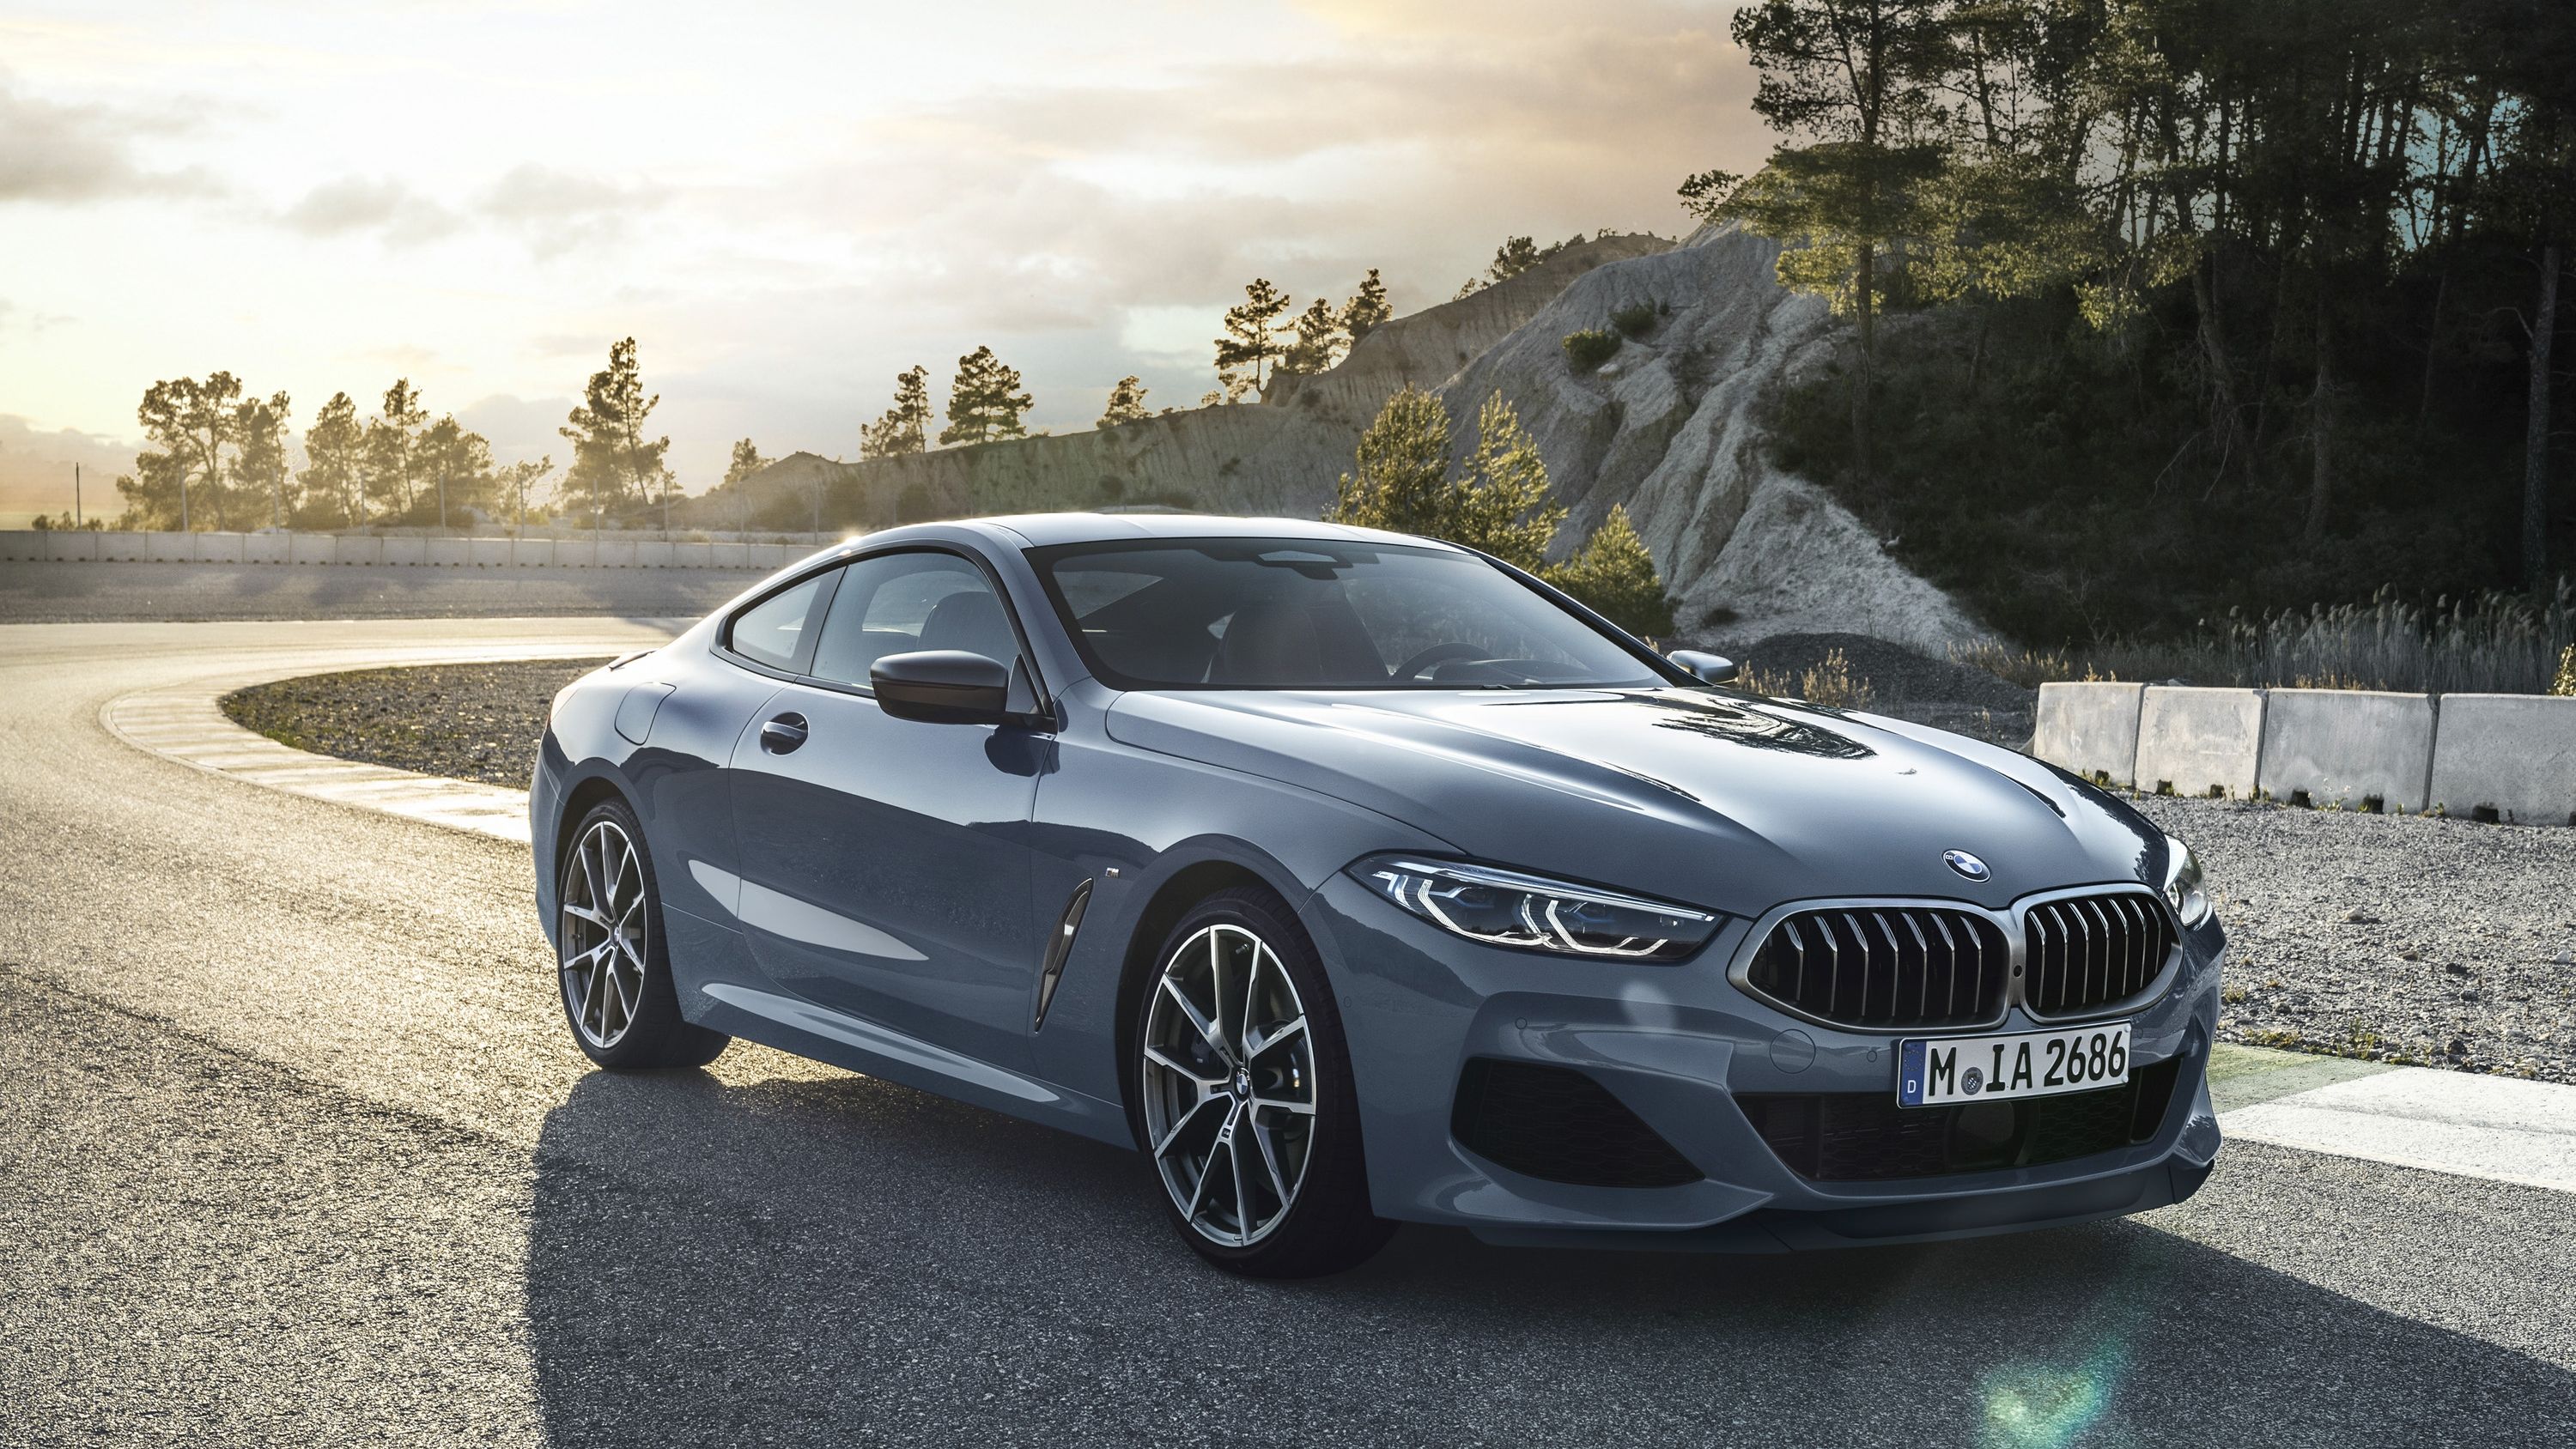 2019 BMW Serie 8 Fotos, fotos, fondos de pantalla. El | Velocidad máxima